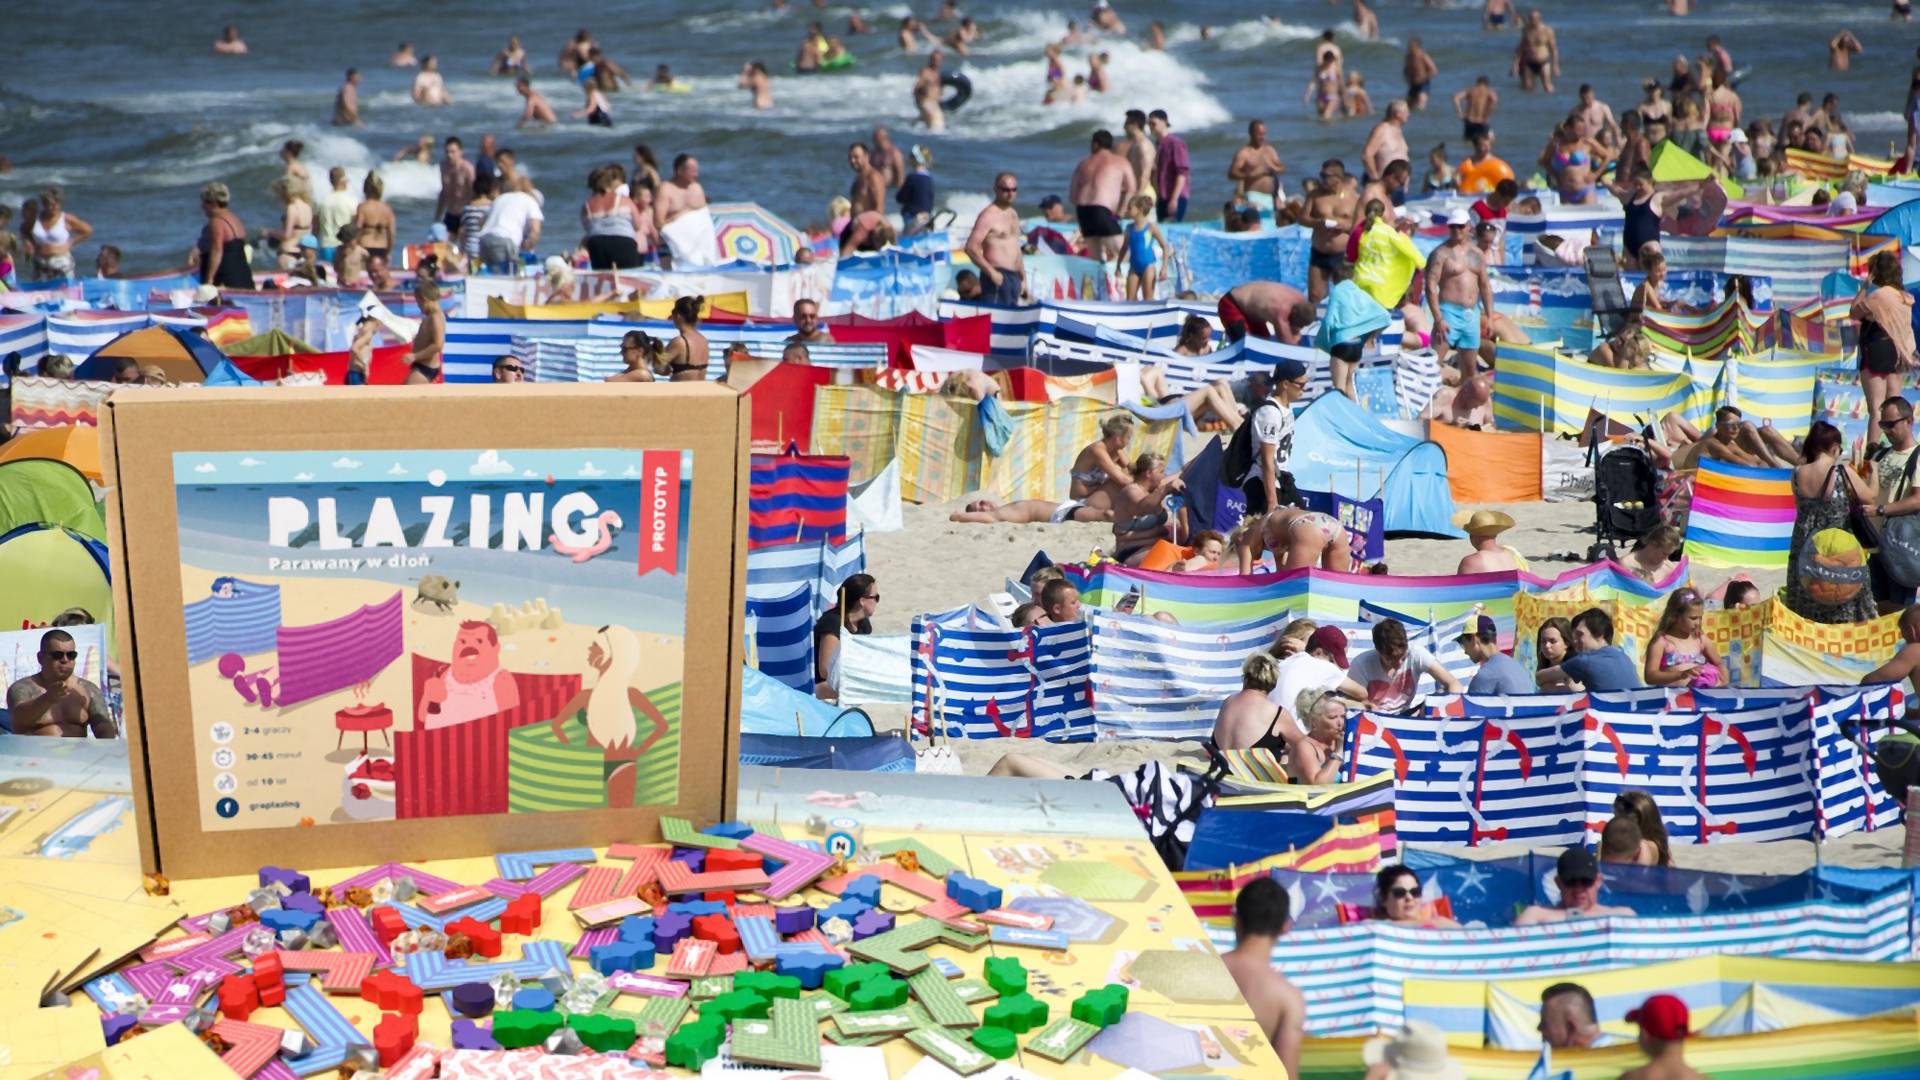 Parawany na plaży zainspirowały twórcę polskiej gry planszowej